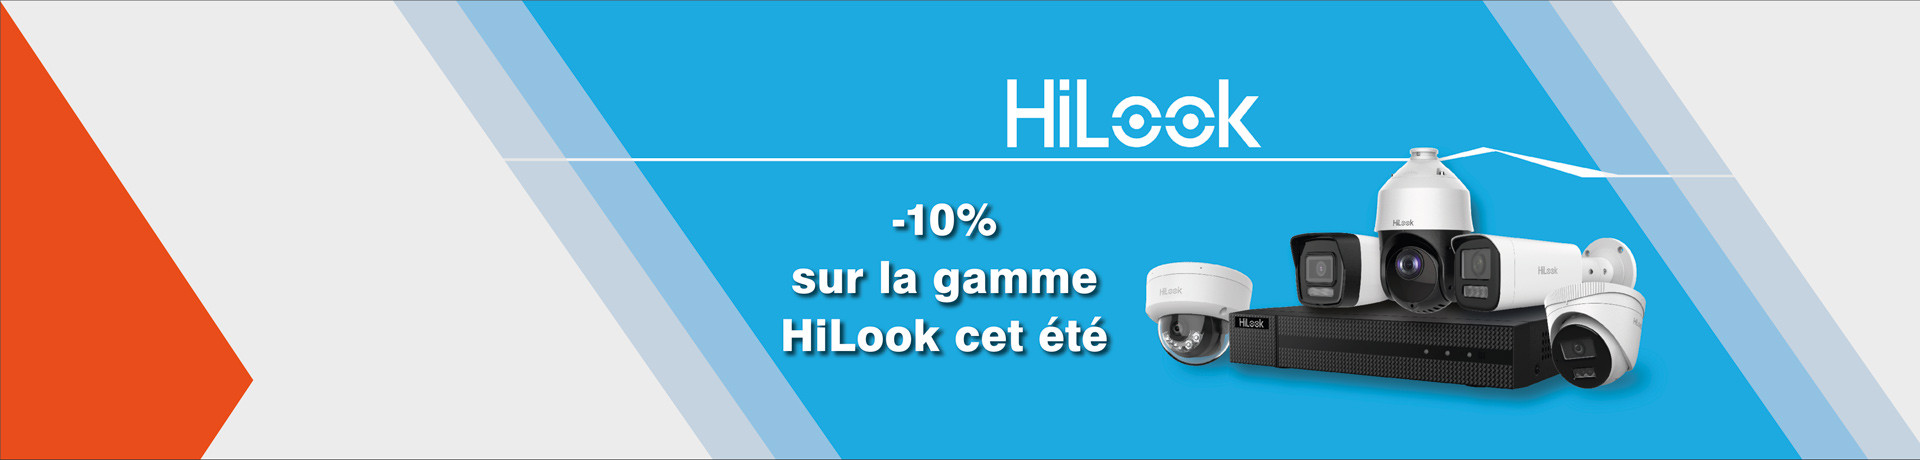 10% sur HiLook